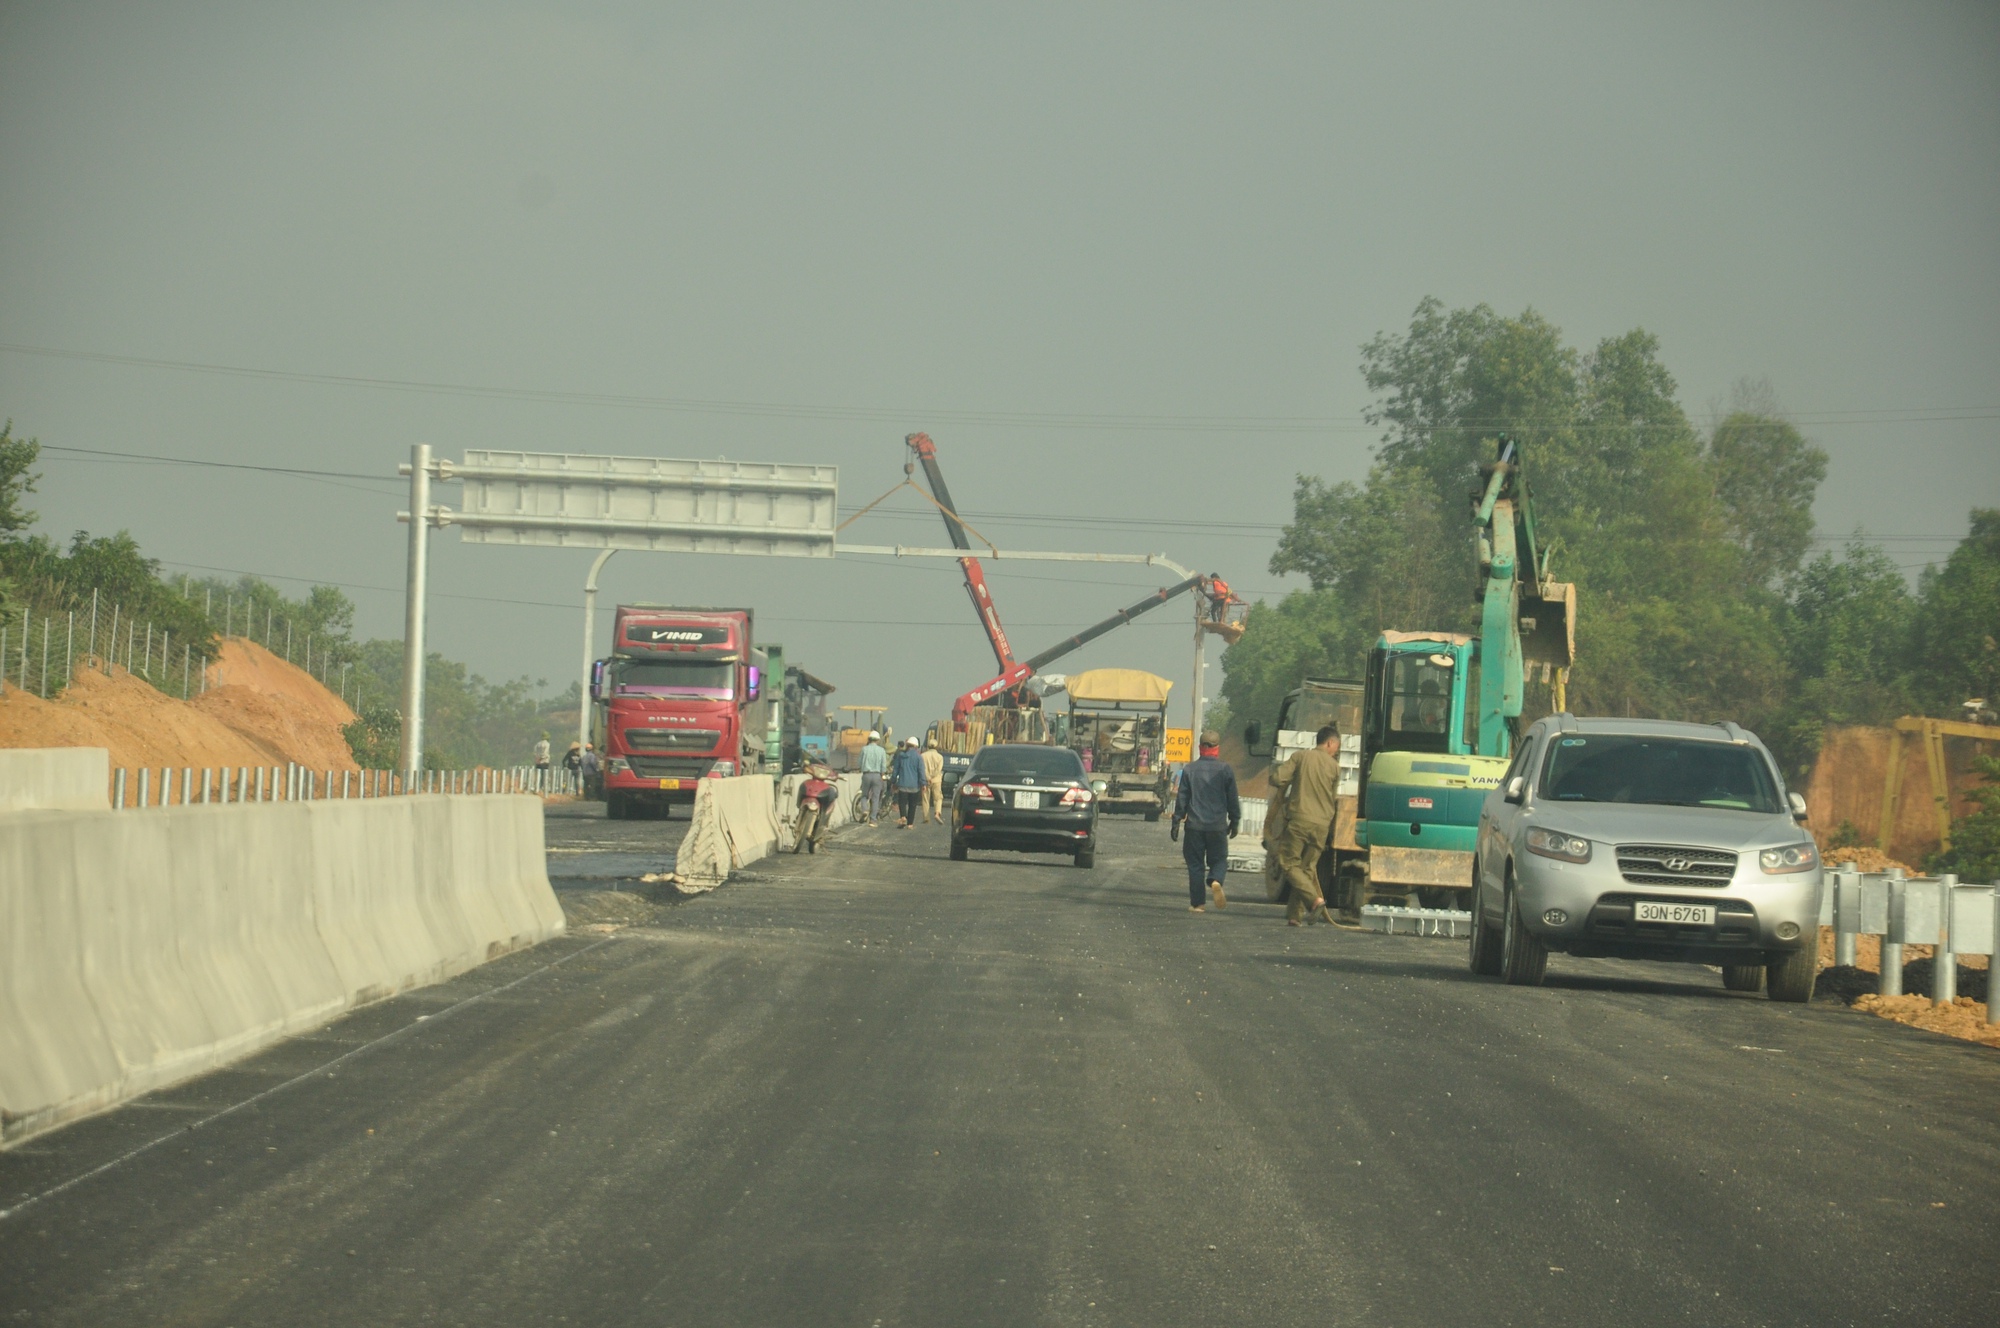 Cao tốc Tuyên Quang - Phú Thọ sẽ tạo kết nối giao thông, phát triển liên vùng  - Ảnh 4.